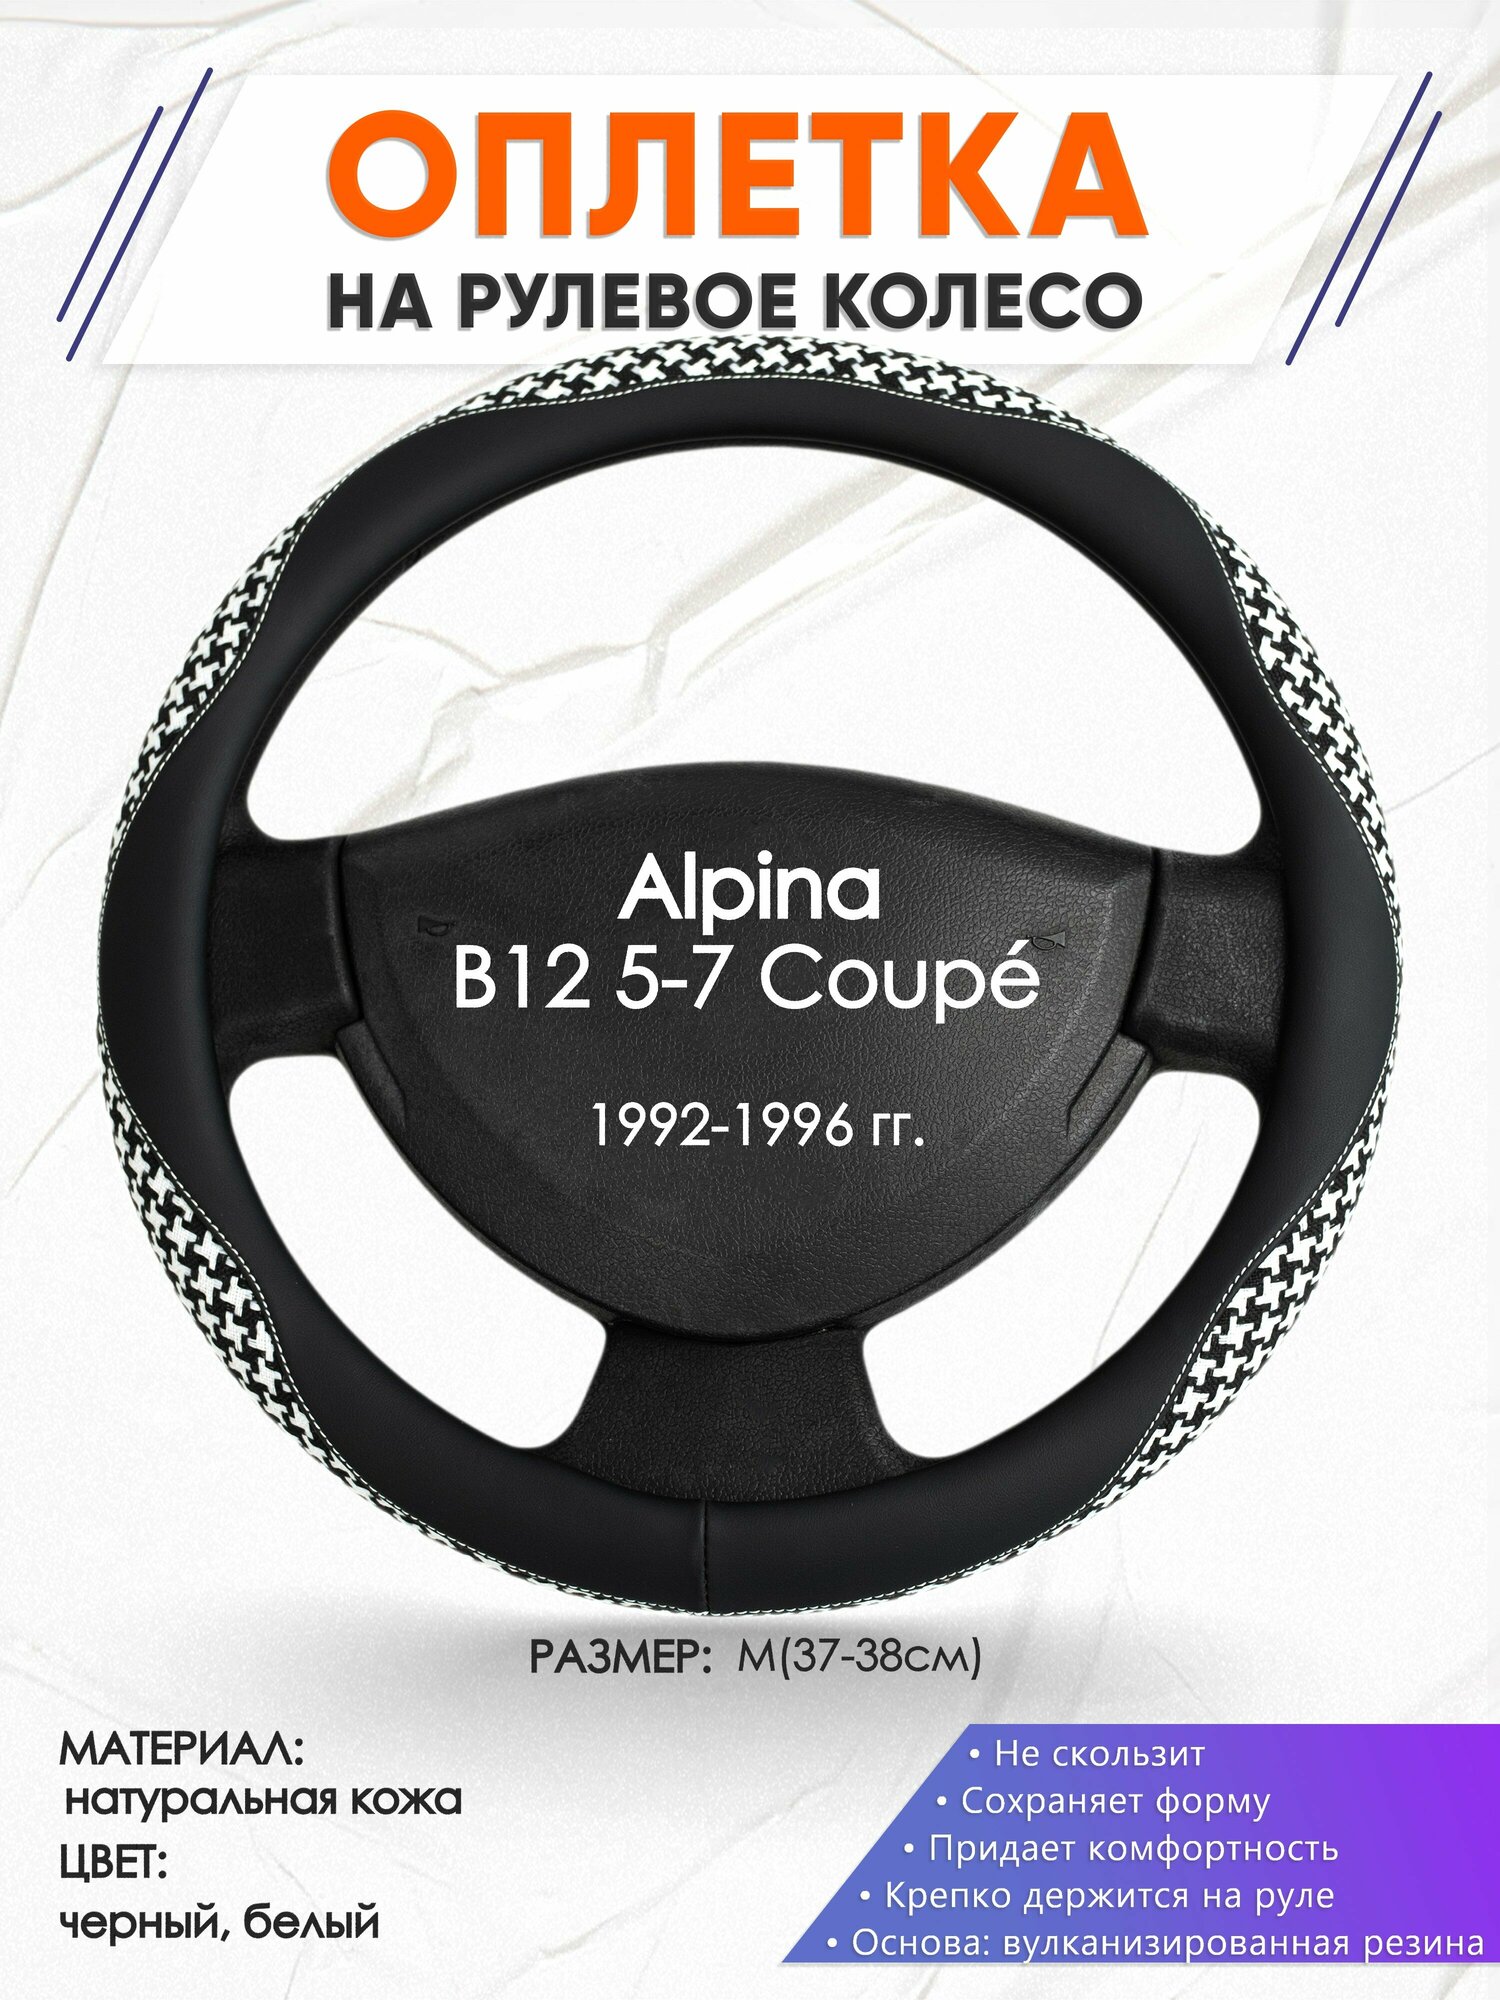 Оплетка наруль для Alpina B12 5-7 Coupé(Альпина Б12 купе) 1992-1996 годов выпуска, размер M(37-38см), Натуральная кожа 21